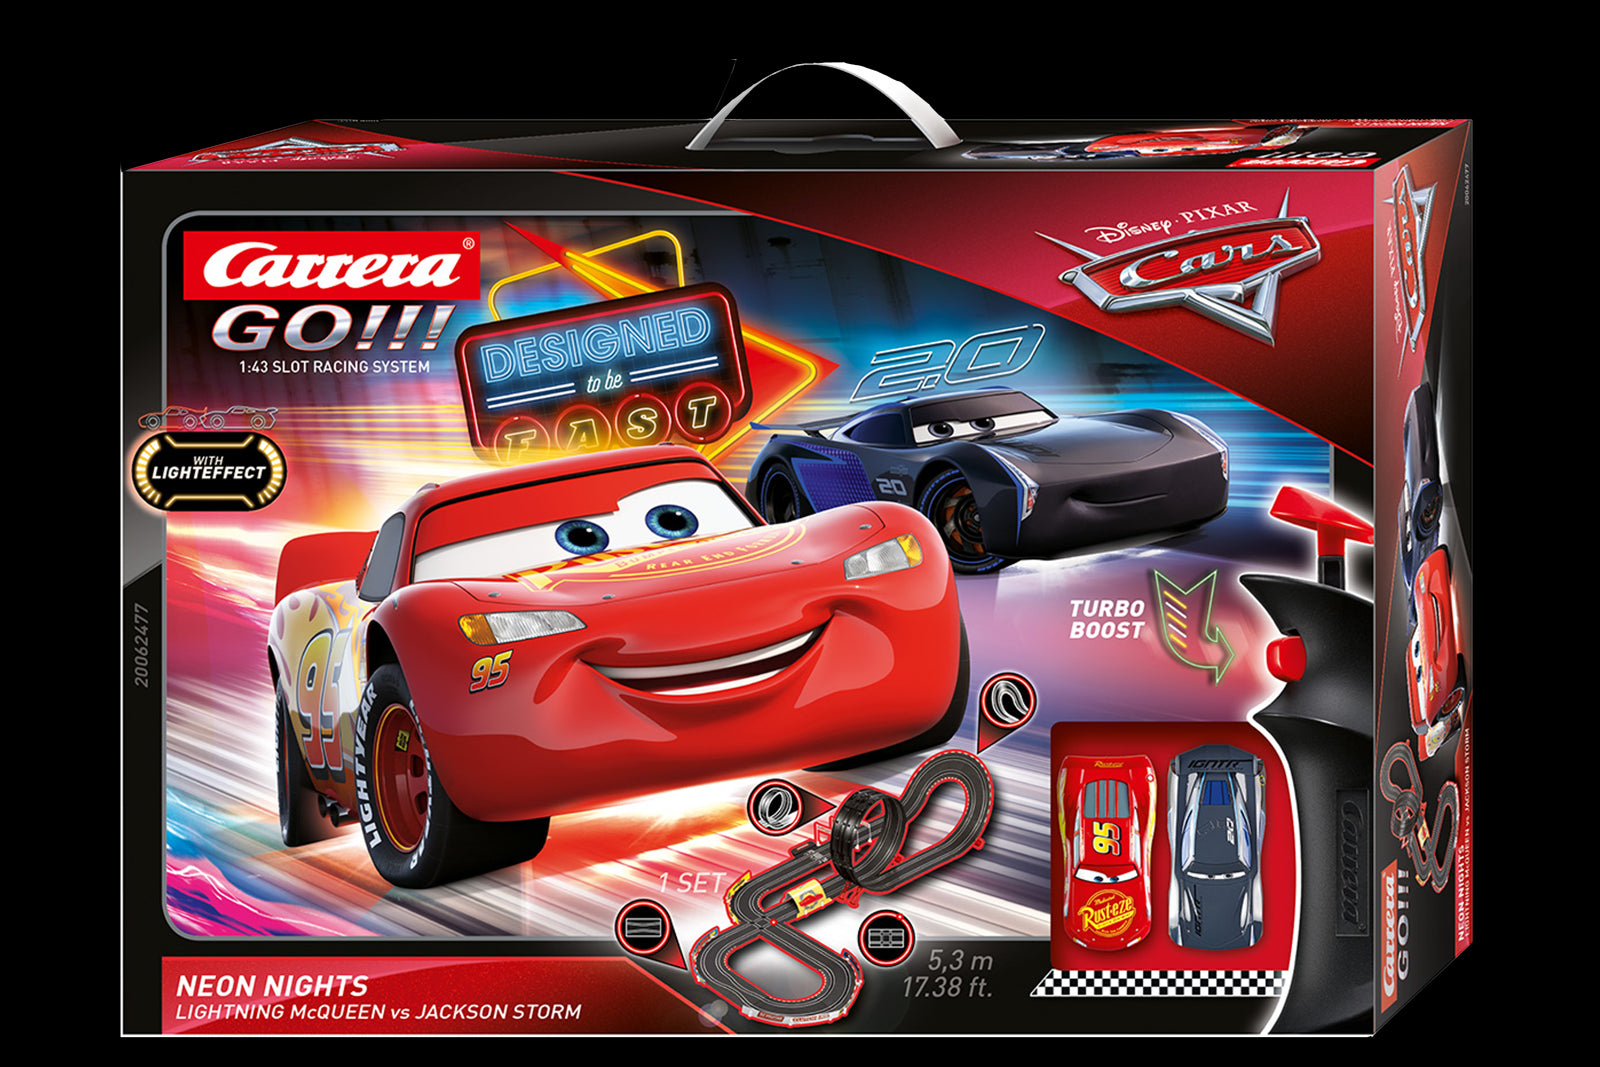 Piste de jouet électrique Speed Grip Carrera GO!!! - Circuit